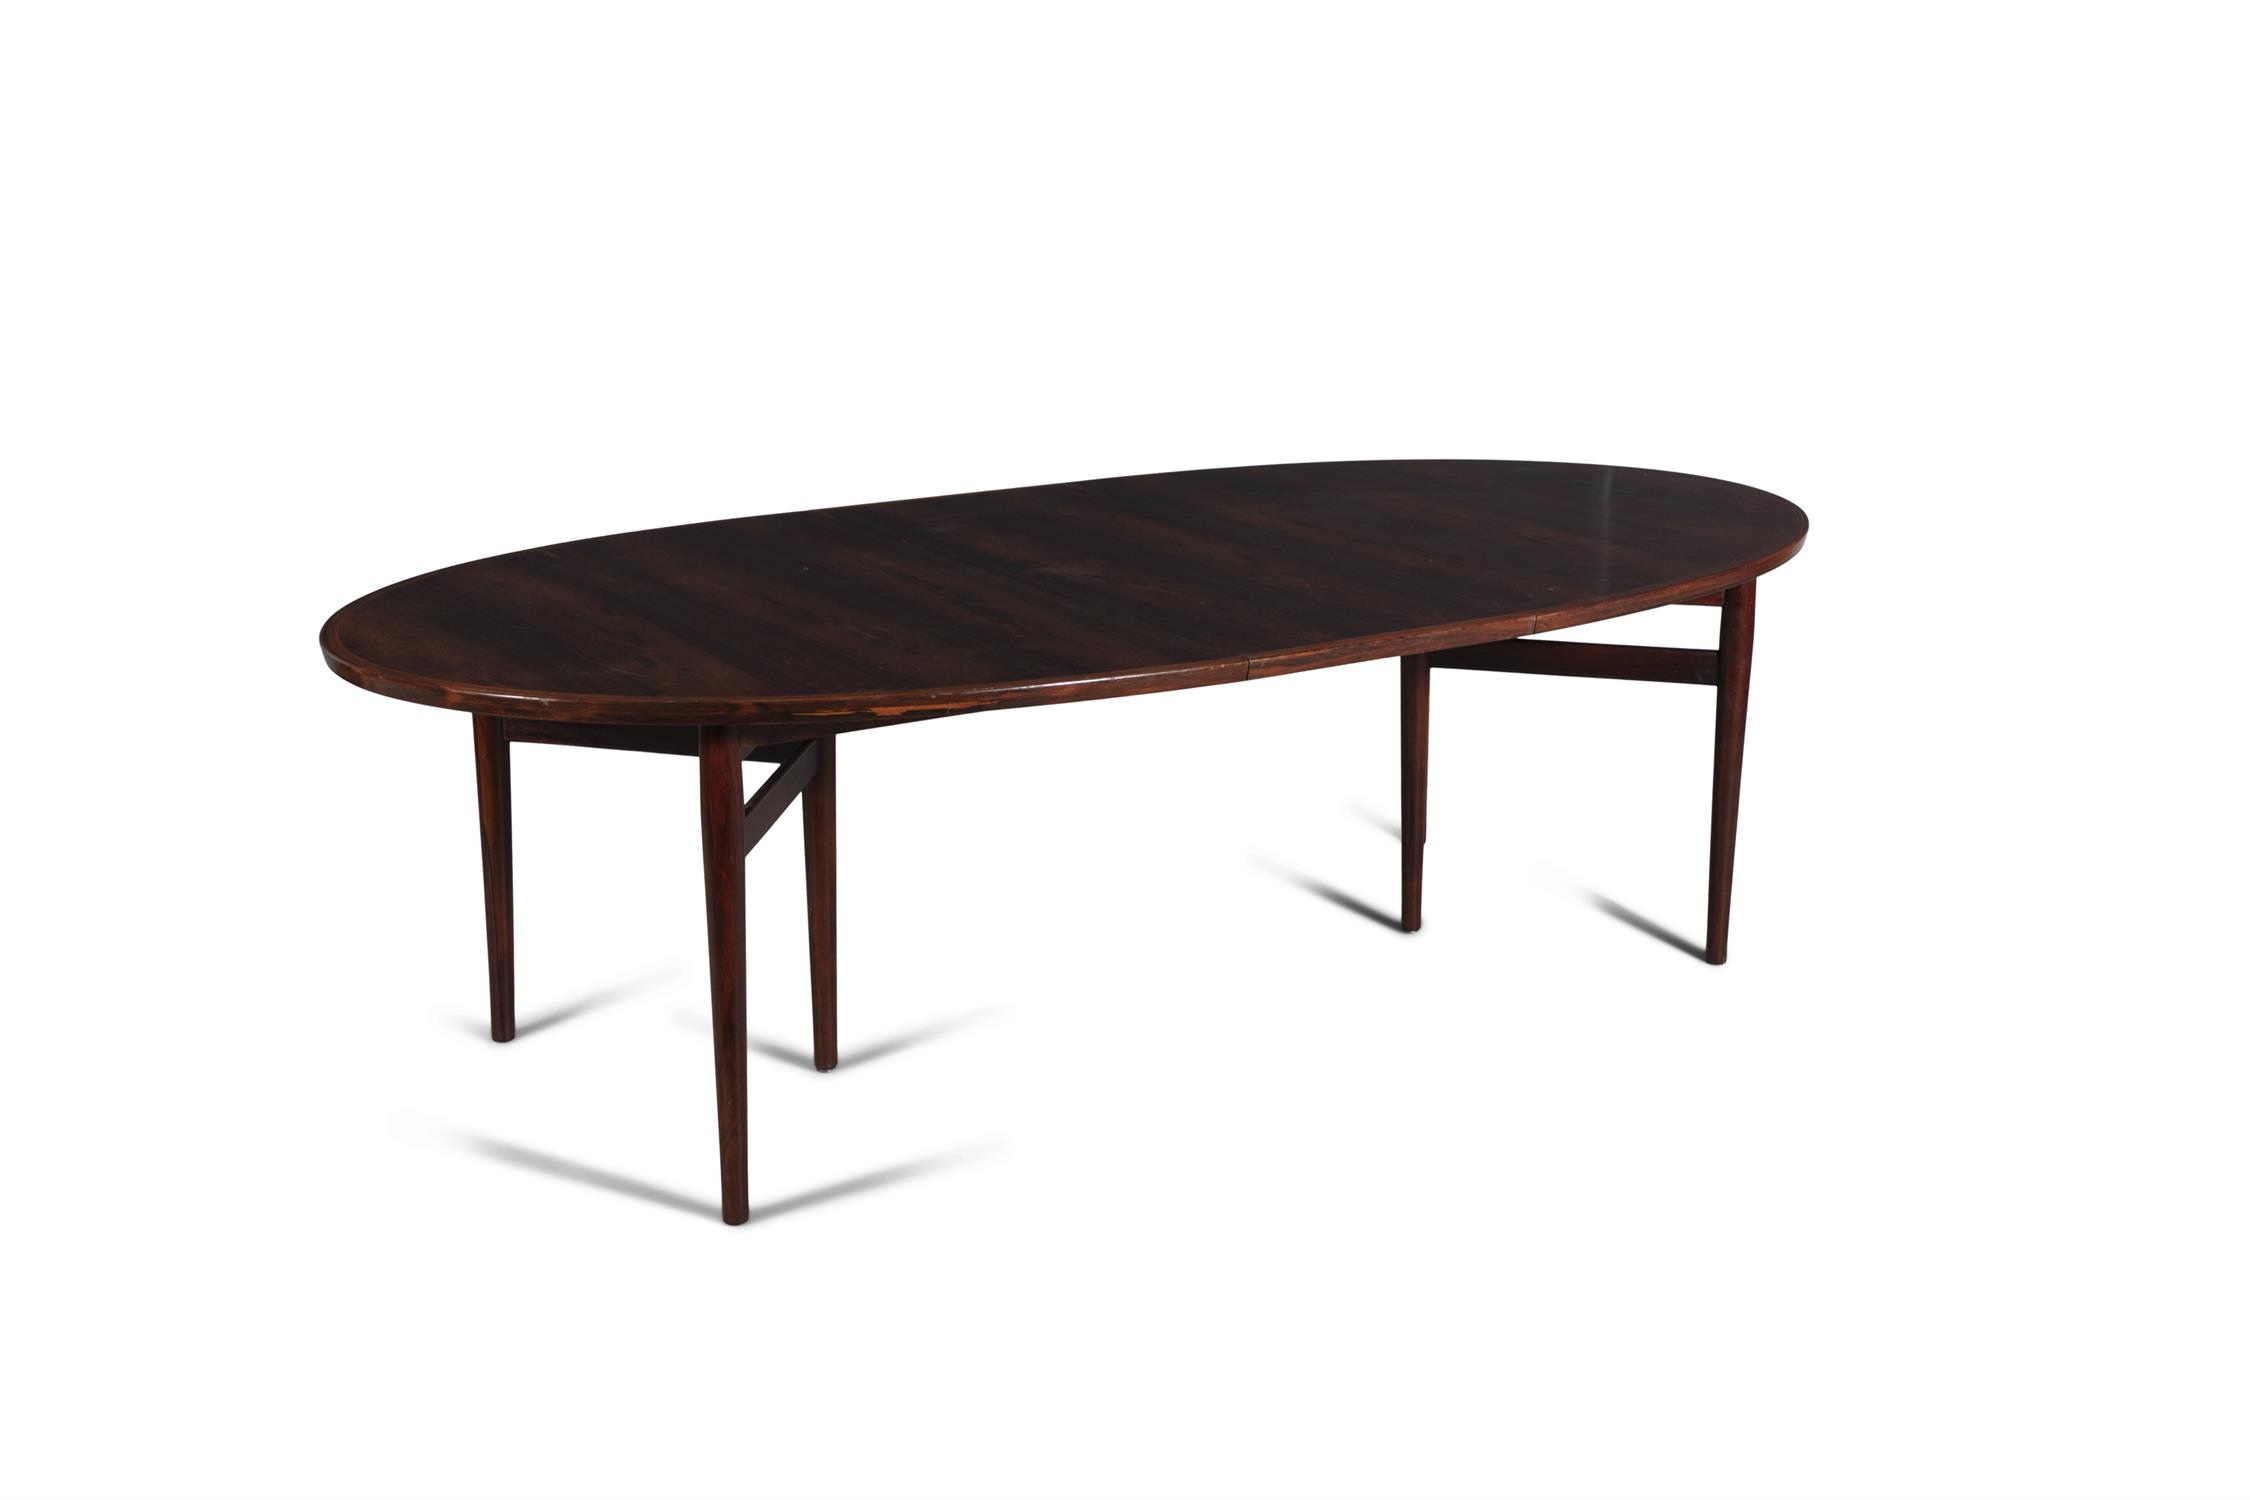 ARNE VODDER (1926-2009) A rosewood 'model 212' extending oval dining table by Arne Vodder, - Image 3 of 6